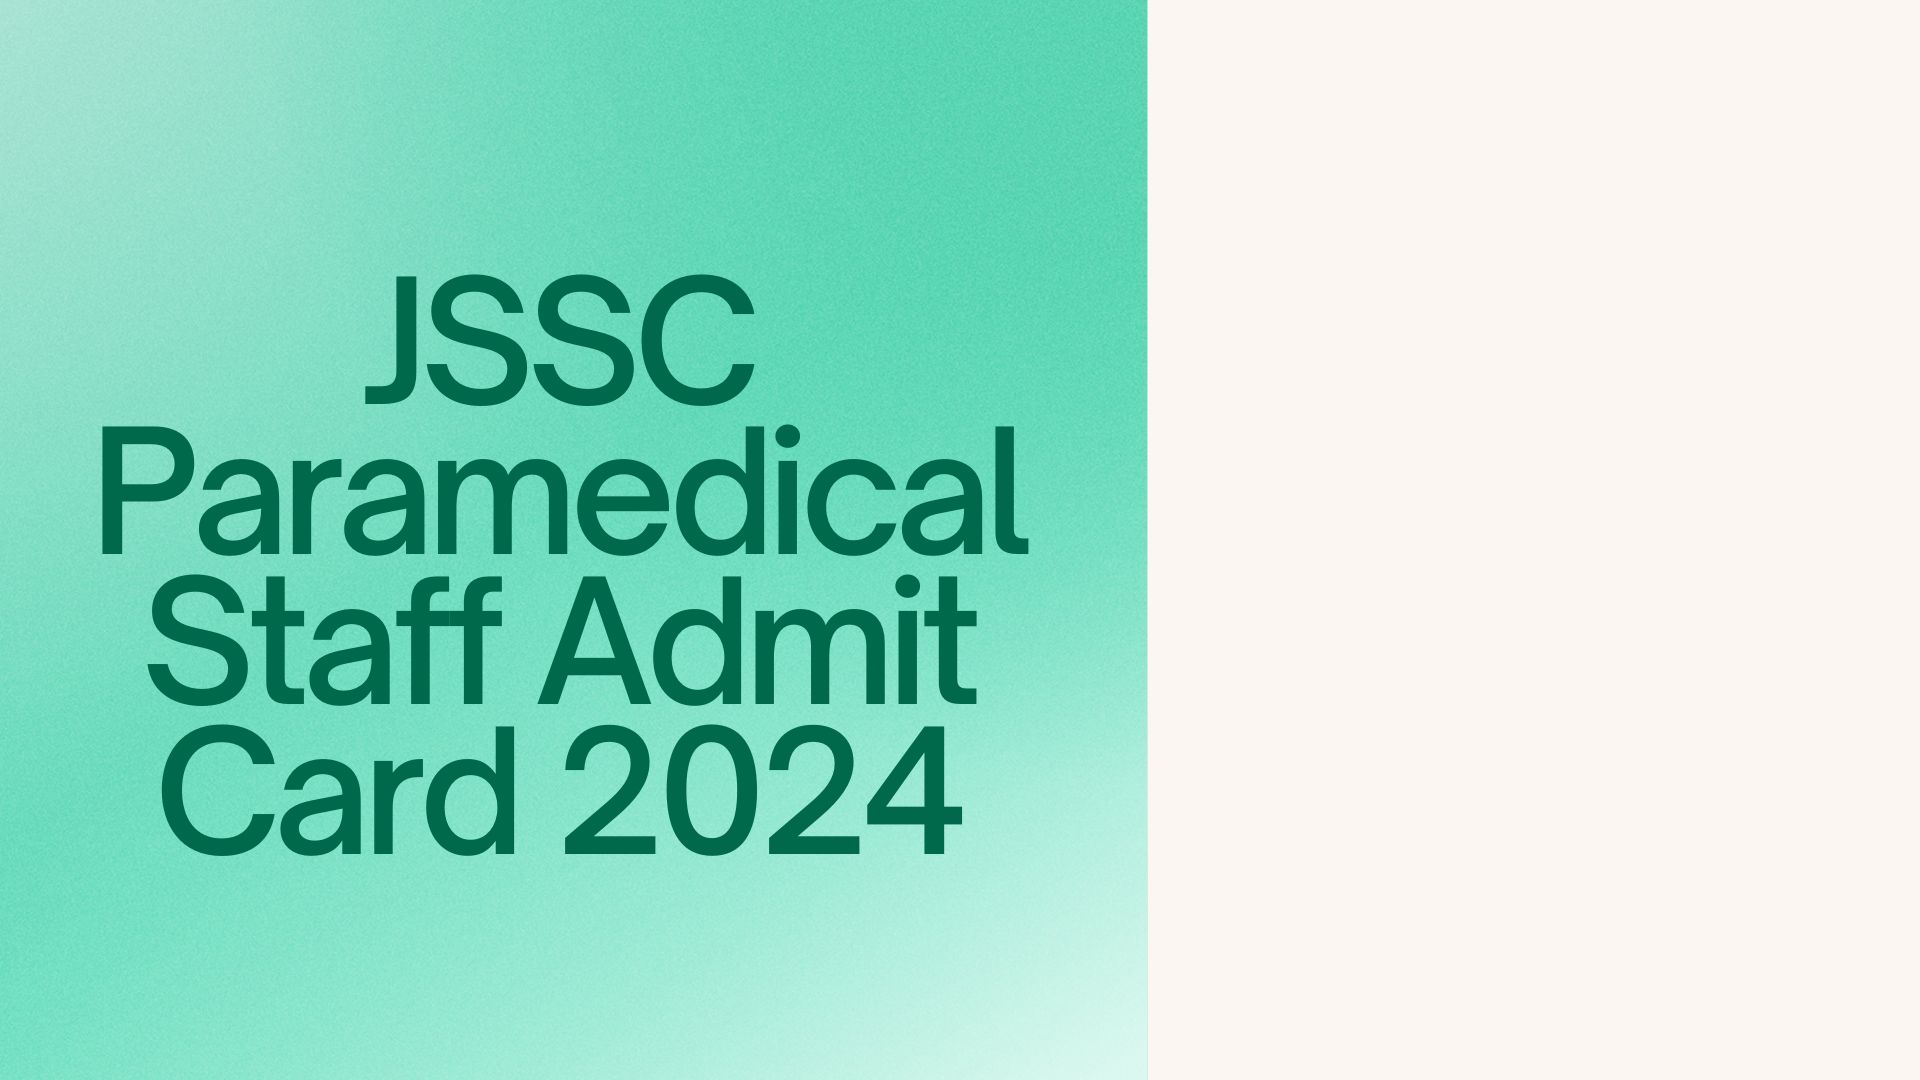 JSSC Paramedical Staff Admit Card 2024